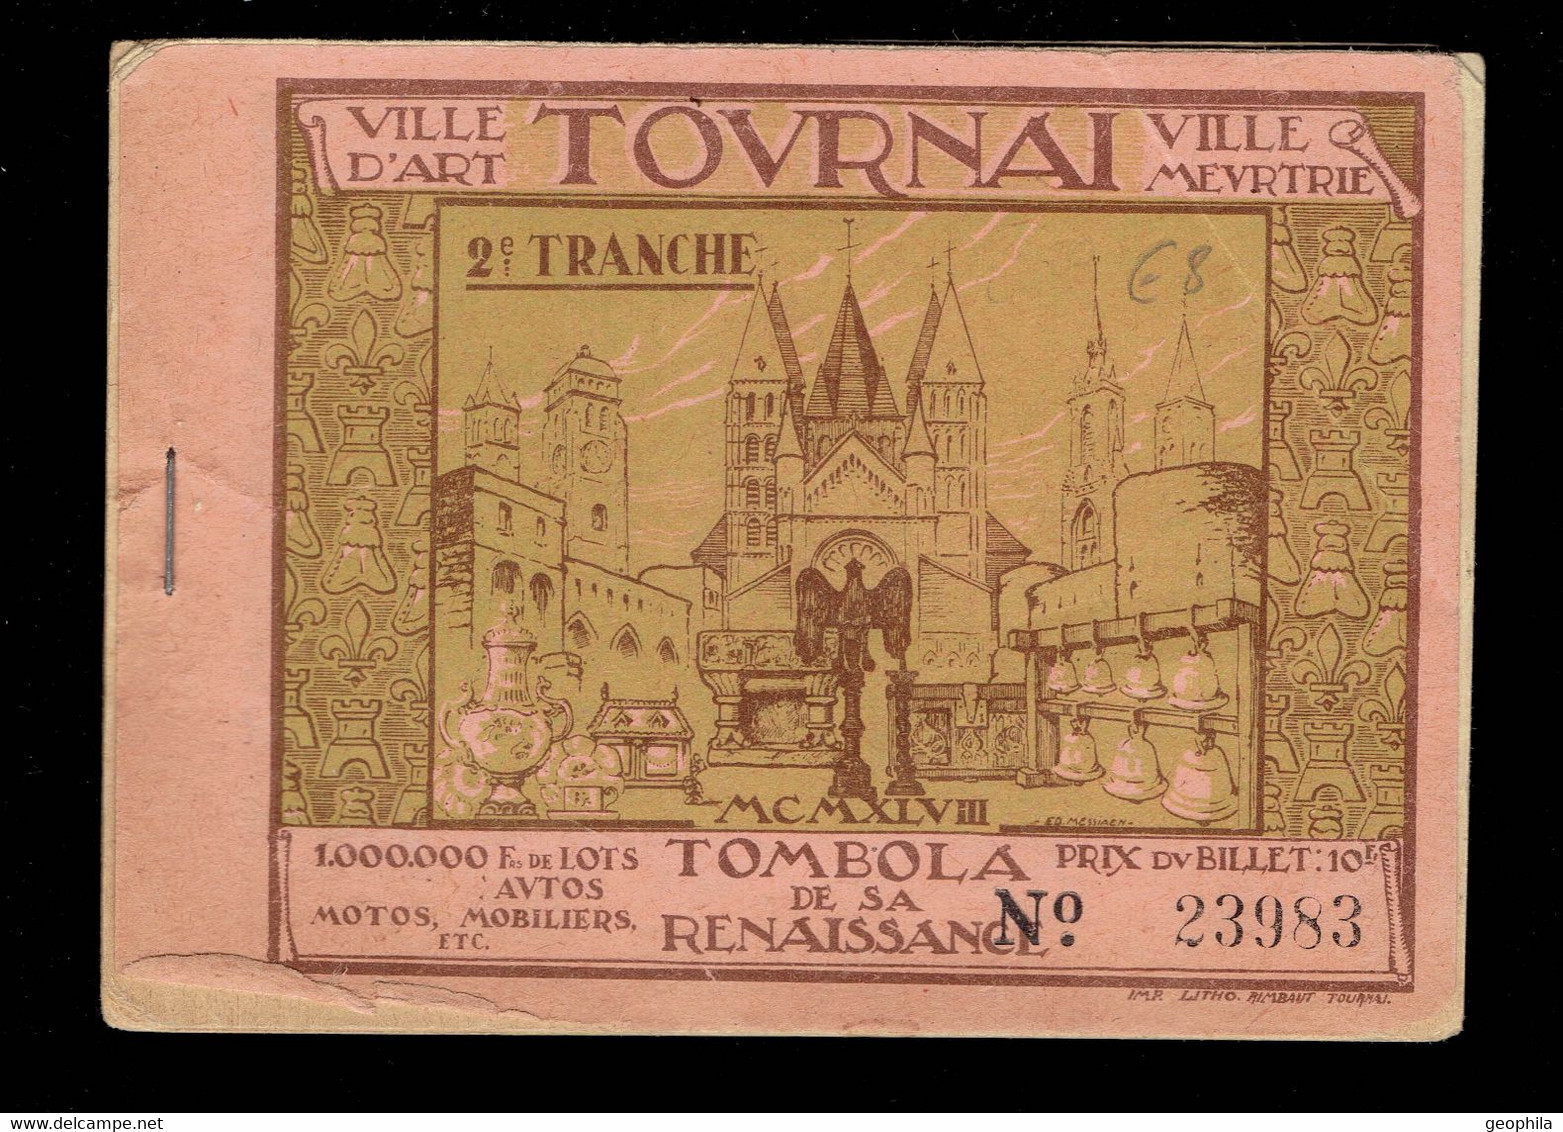 Tournai Ville Meurtrie Tombola De La Renaissance 2ème Tranche Carnet De 10 Billets - Lotterielose